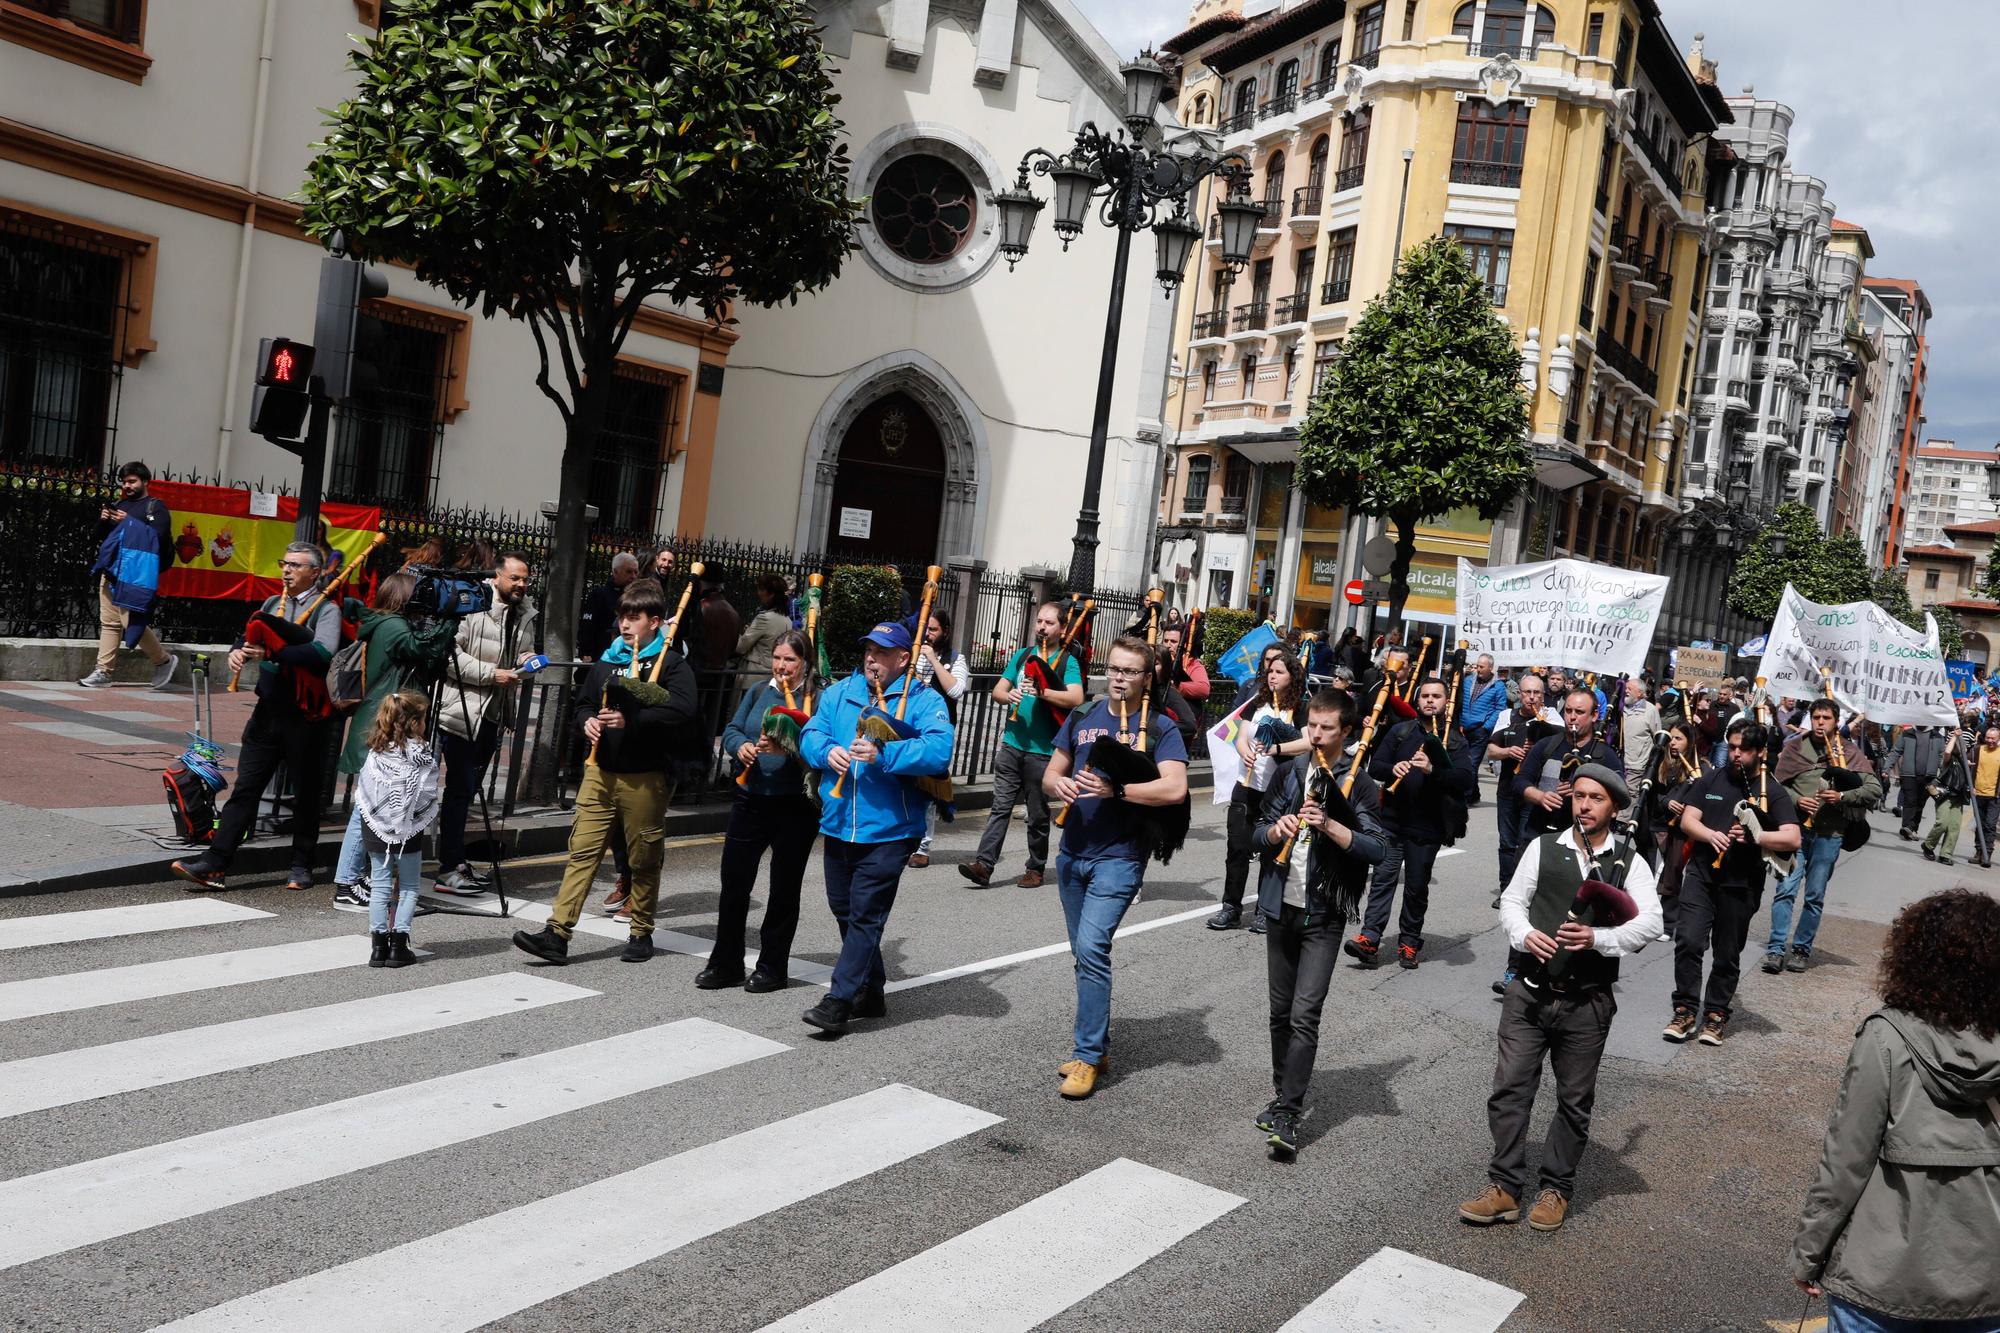 Los partidarios de la oficialidad del asturiano se manifiestan en Oviedo.